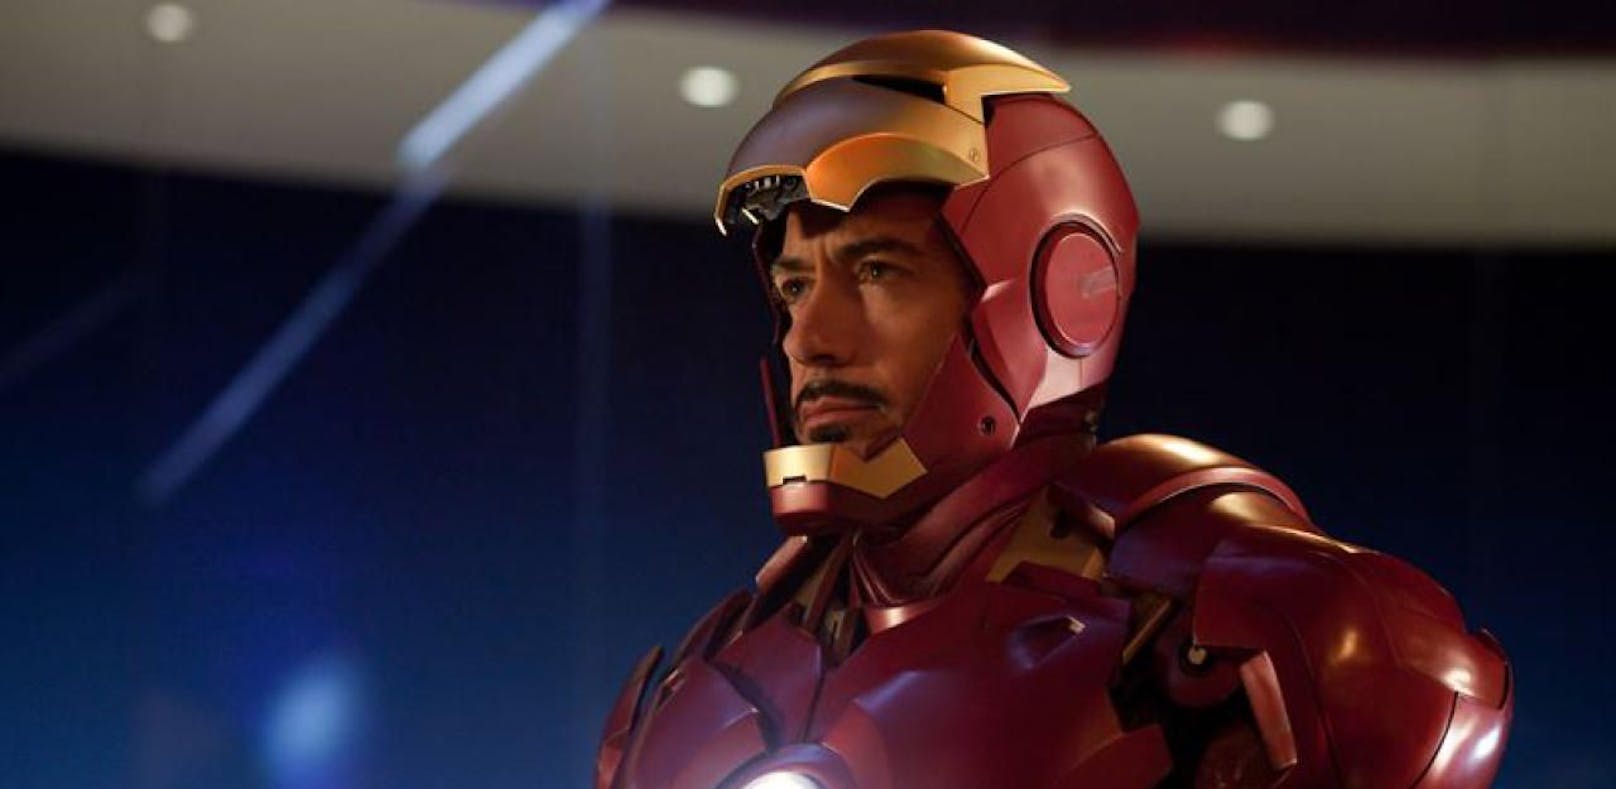 Teures Kostüm von "Iron Man" gestohlen